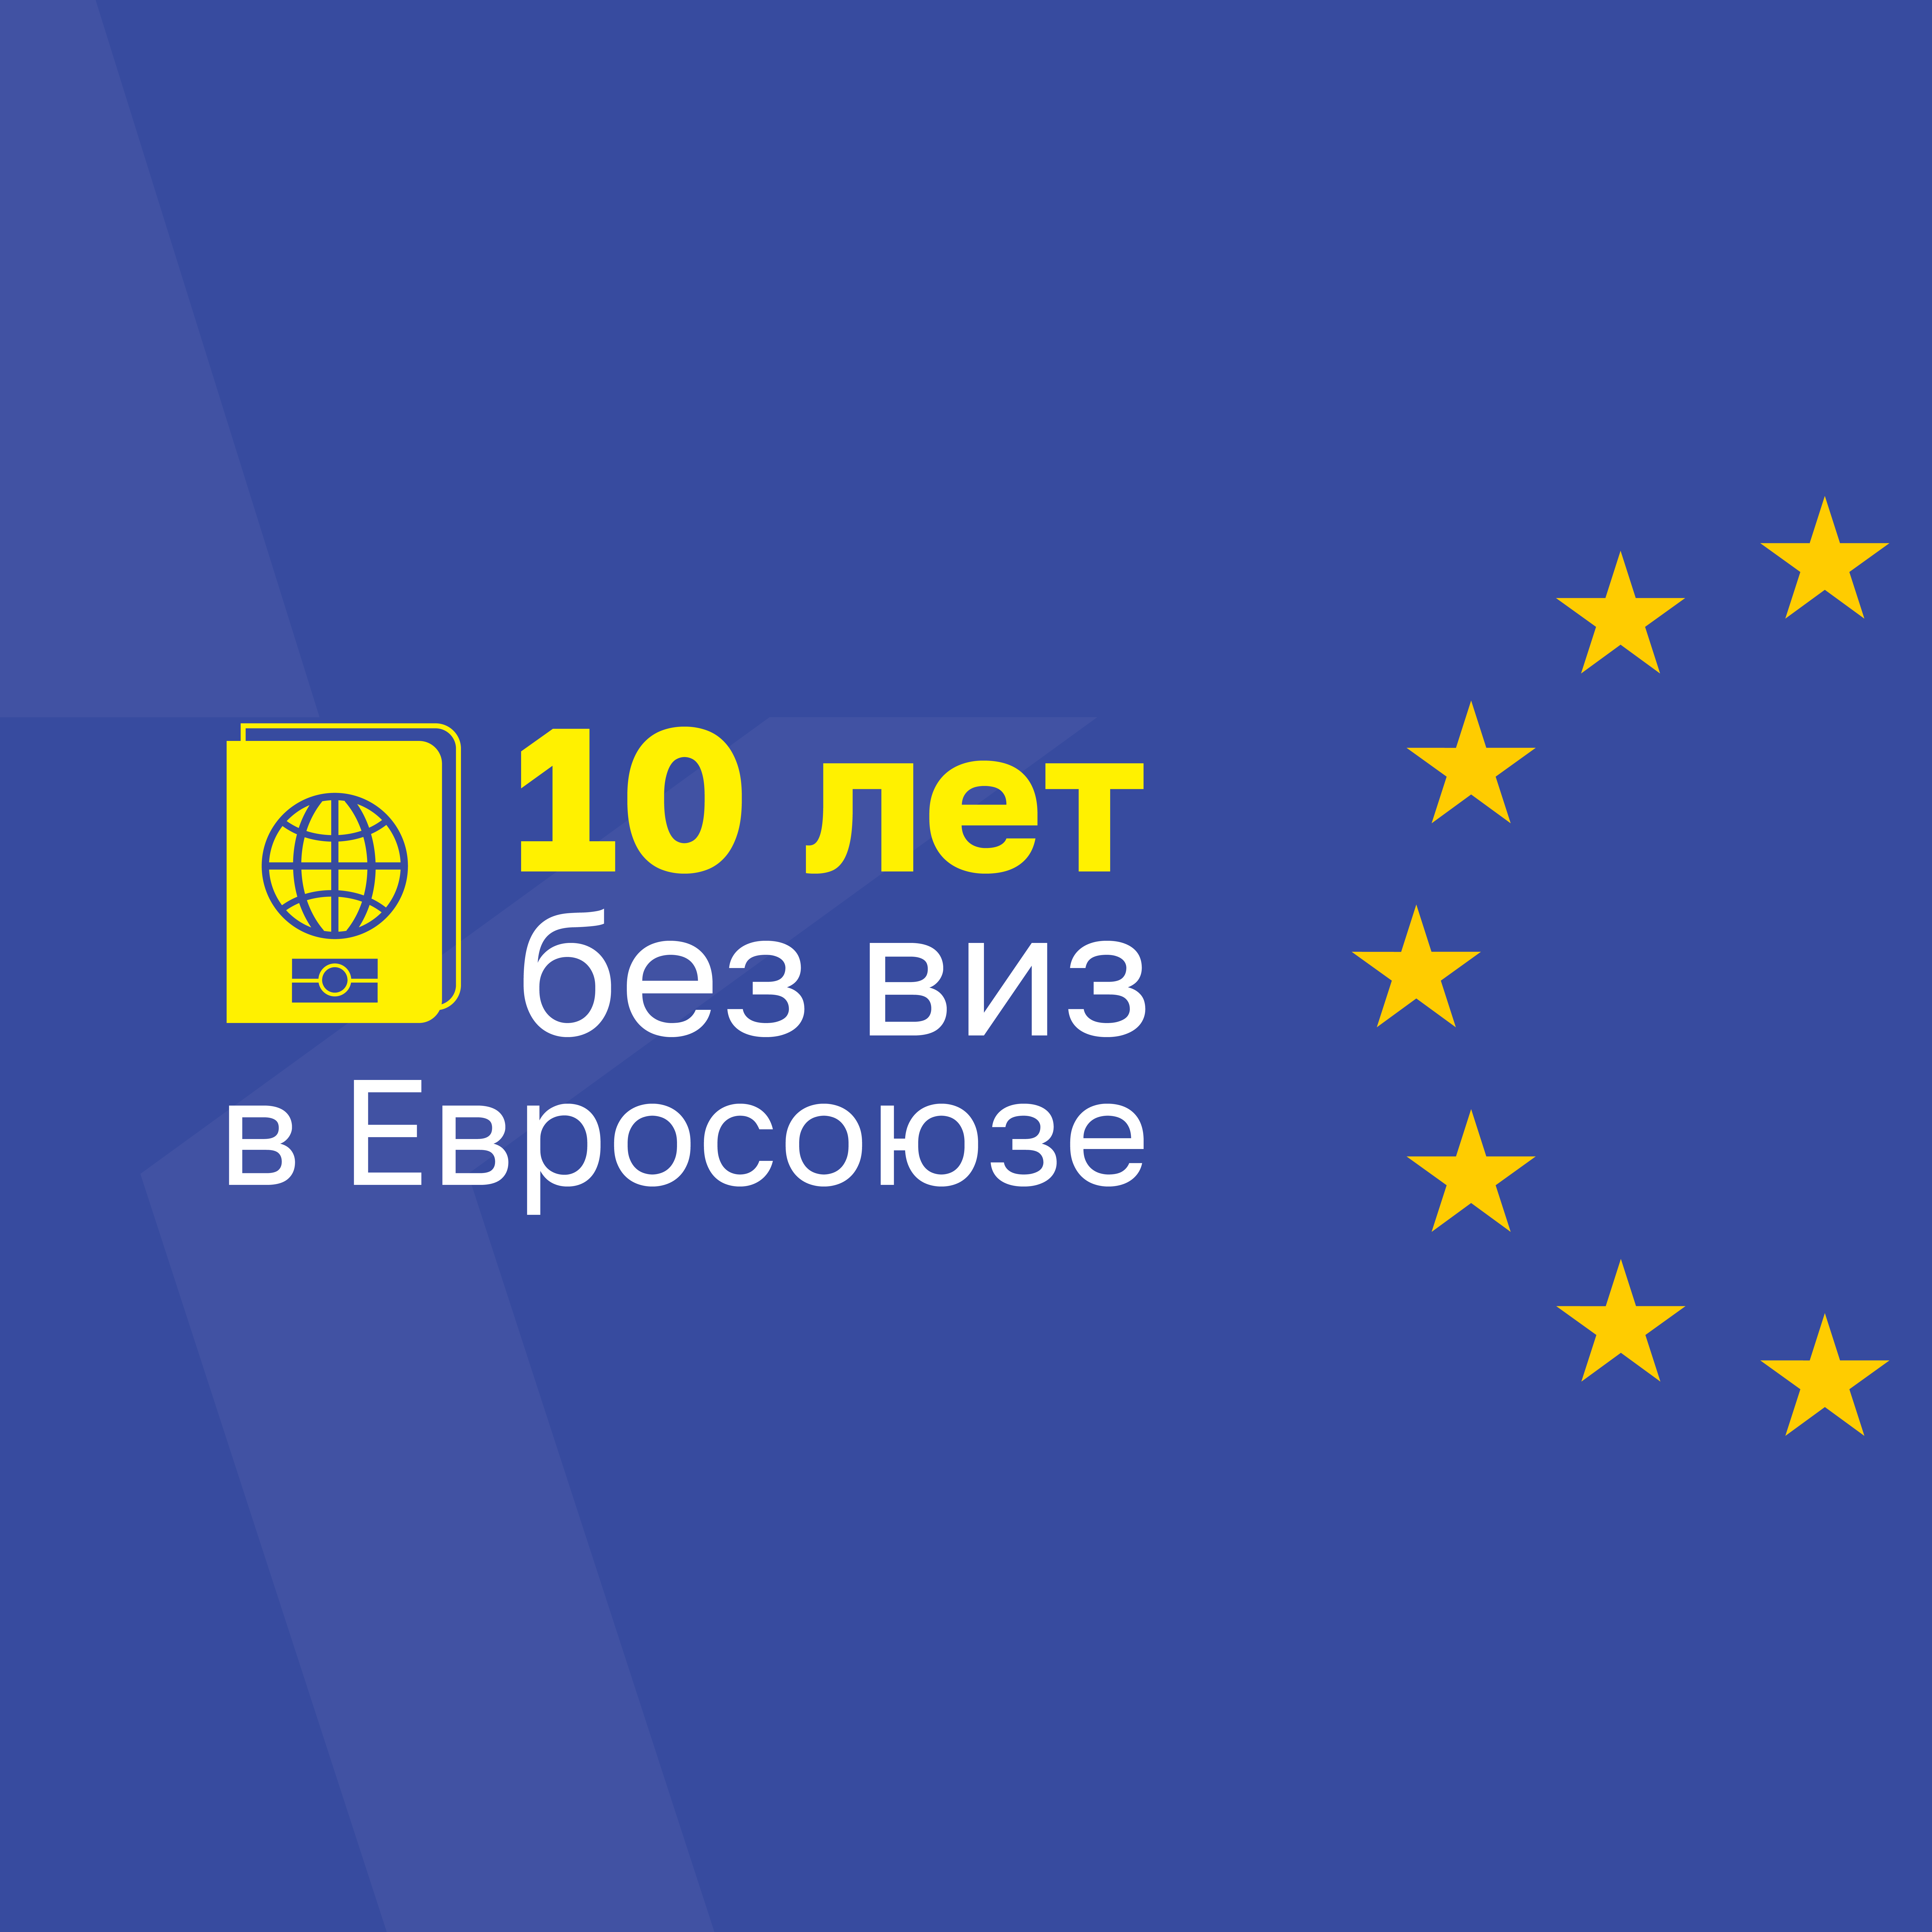 28 апреля Республика Молдова отмечает десятилетие либерализации визового режима с Европейским Союзом.